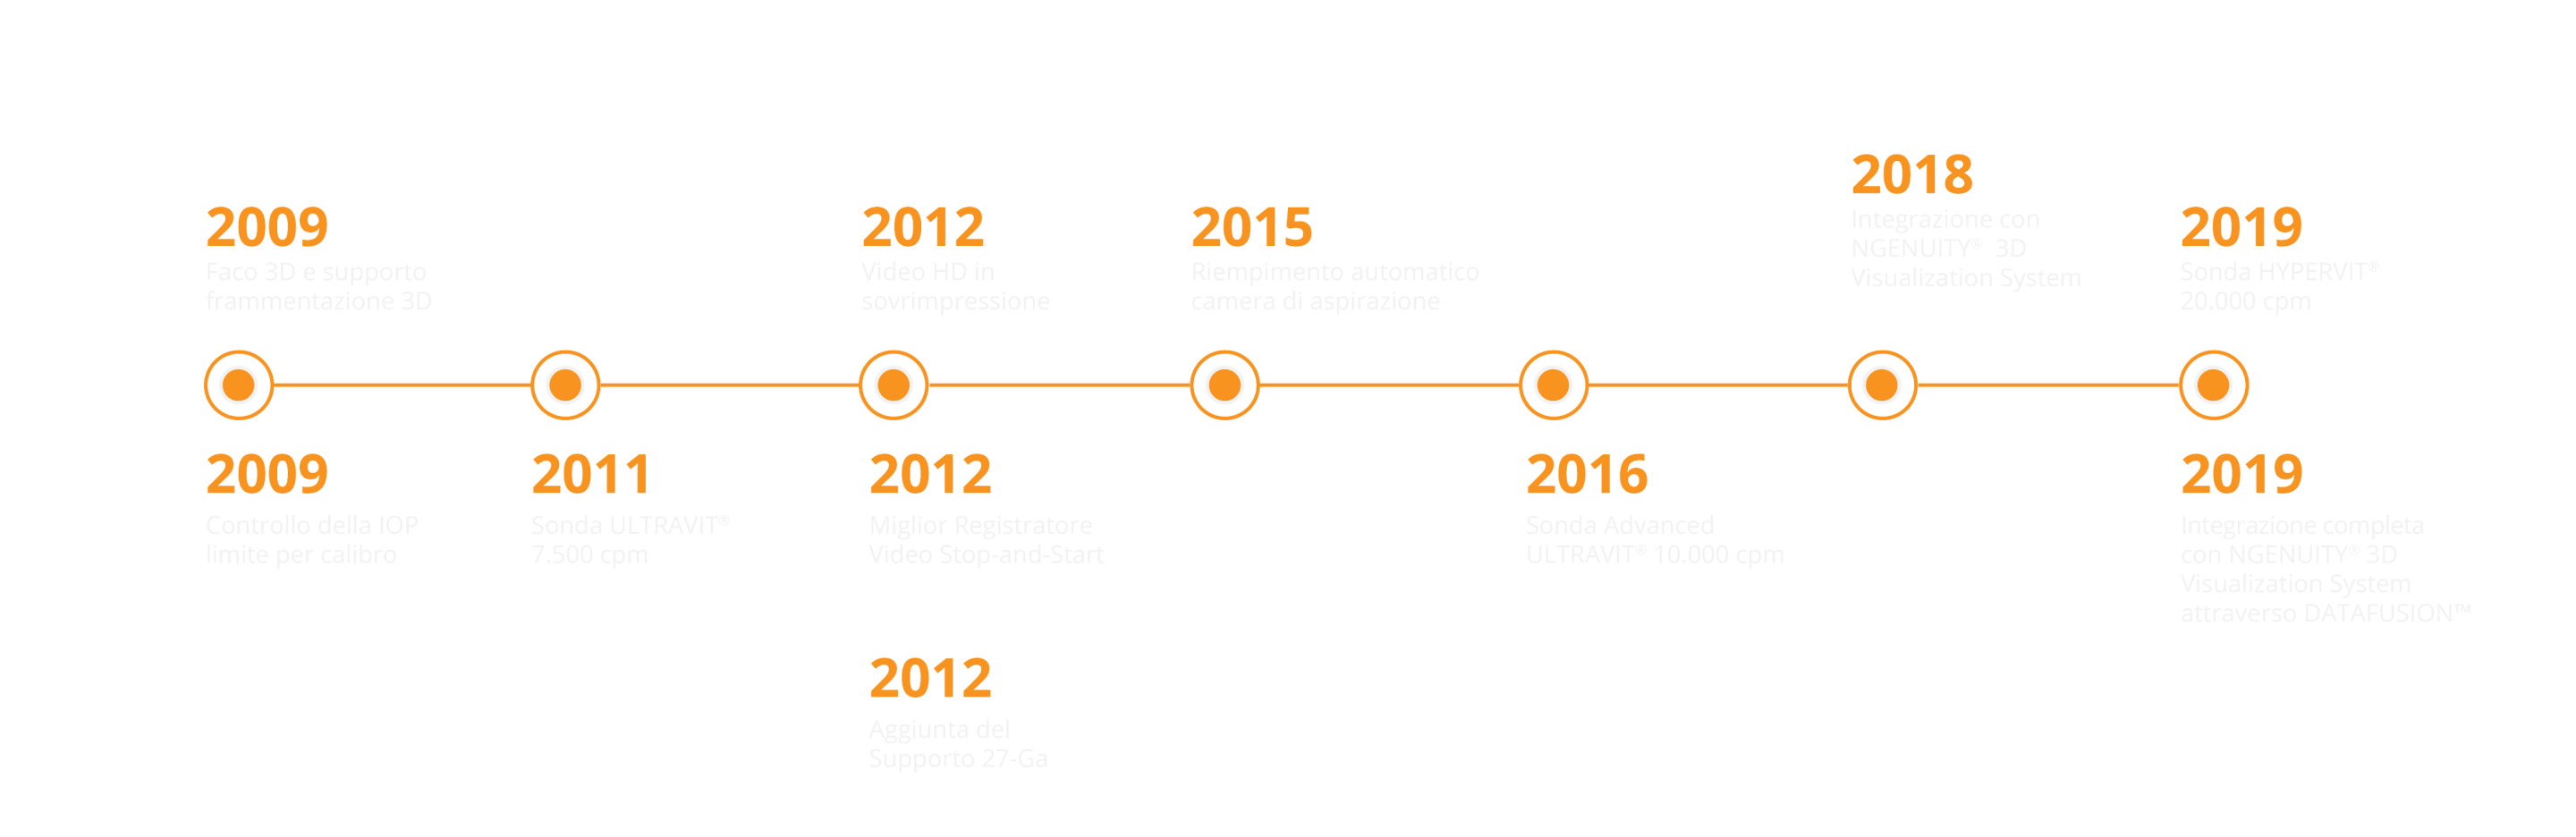 Una linea temporale che va dal 2009 al 2019 e che mostra l'evoluzione delle caratteristiche del CONSTELLATION Vision System.